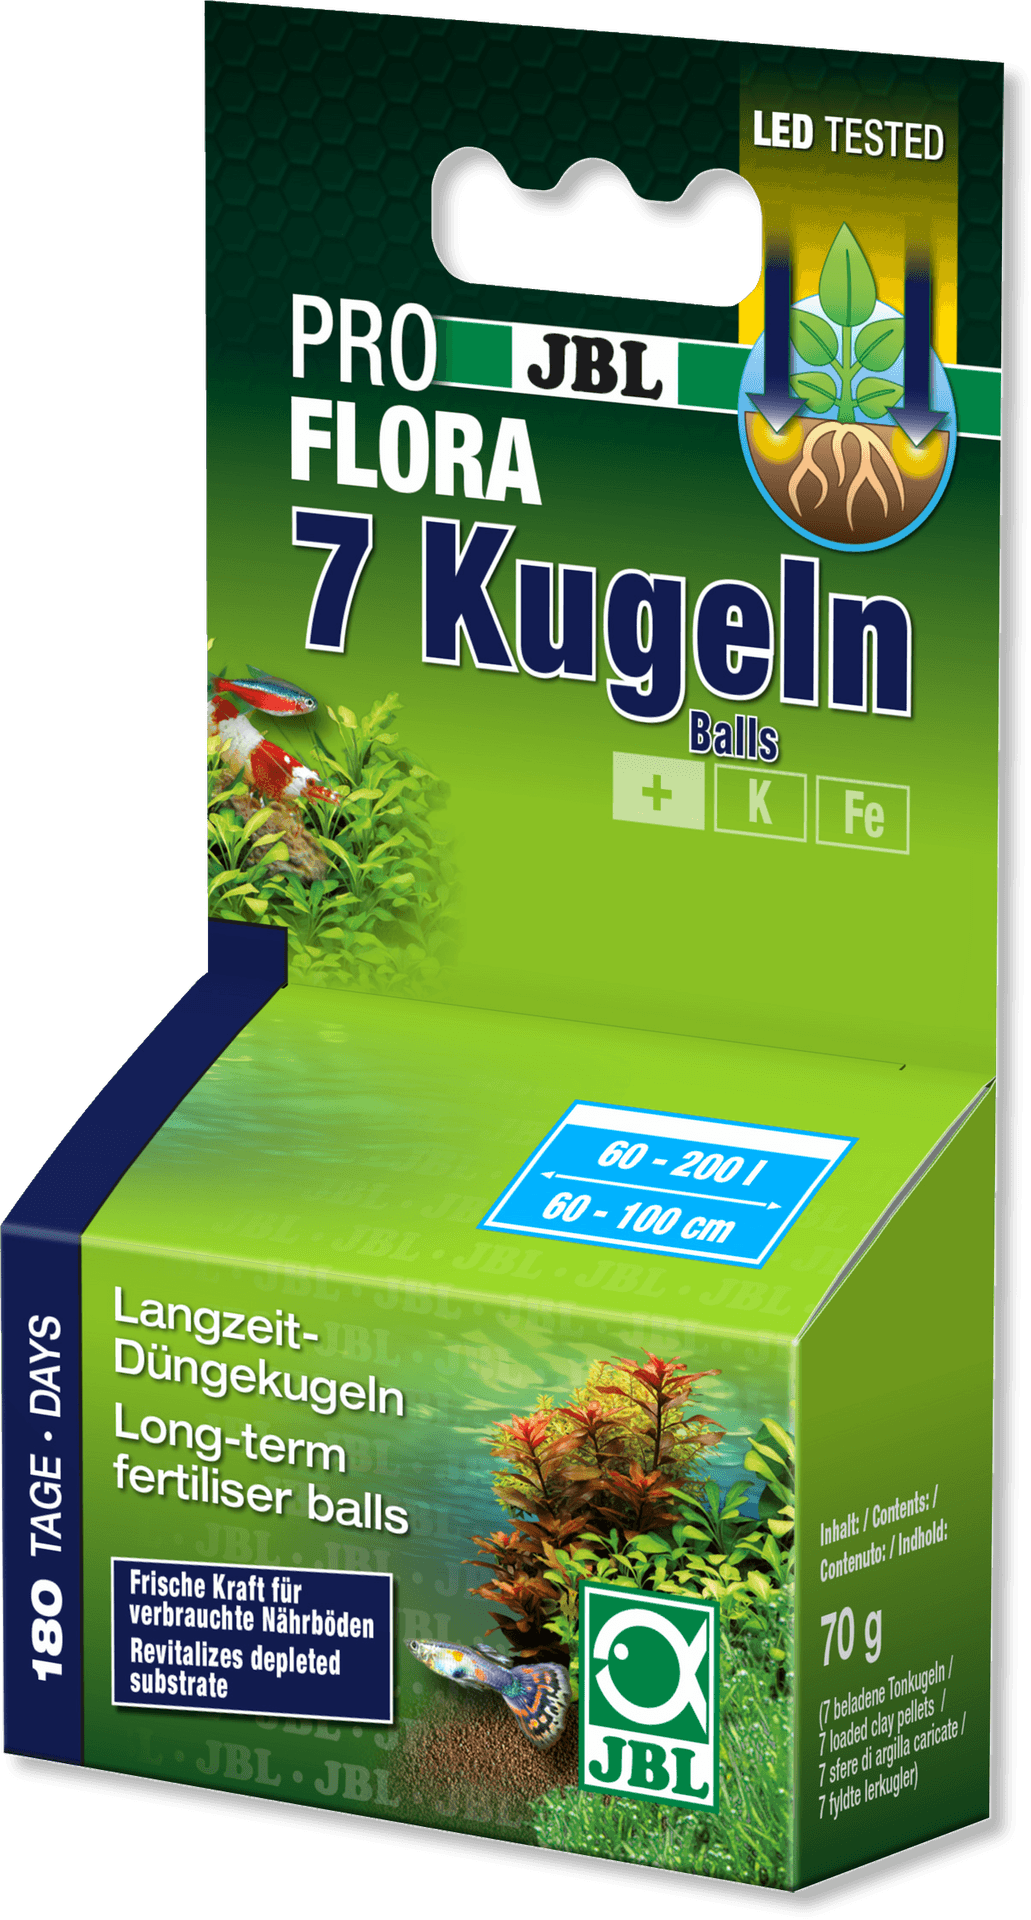 J B L Pro Flora7 Kugeln Fertilizer Balls Packaging PNG image